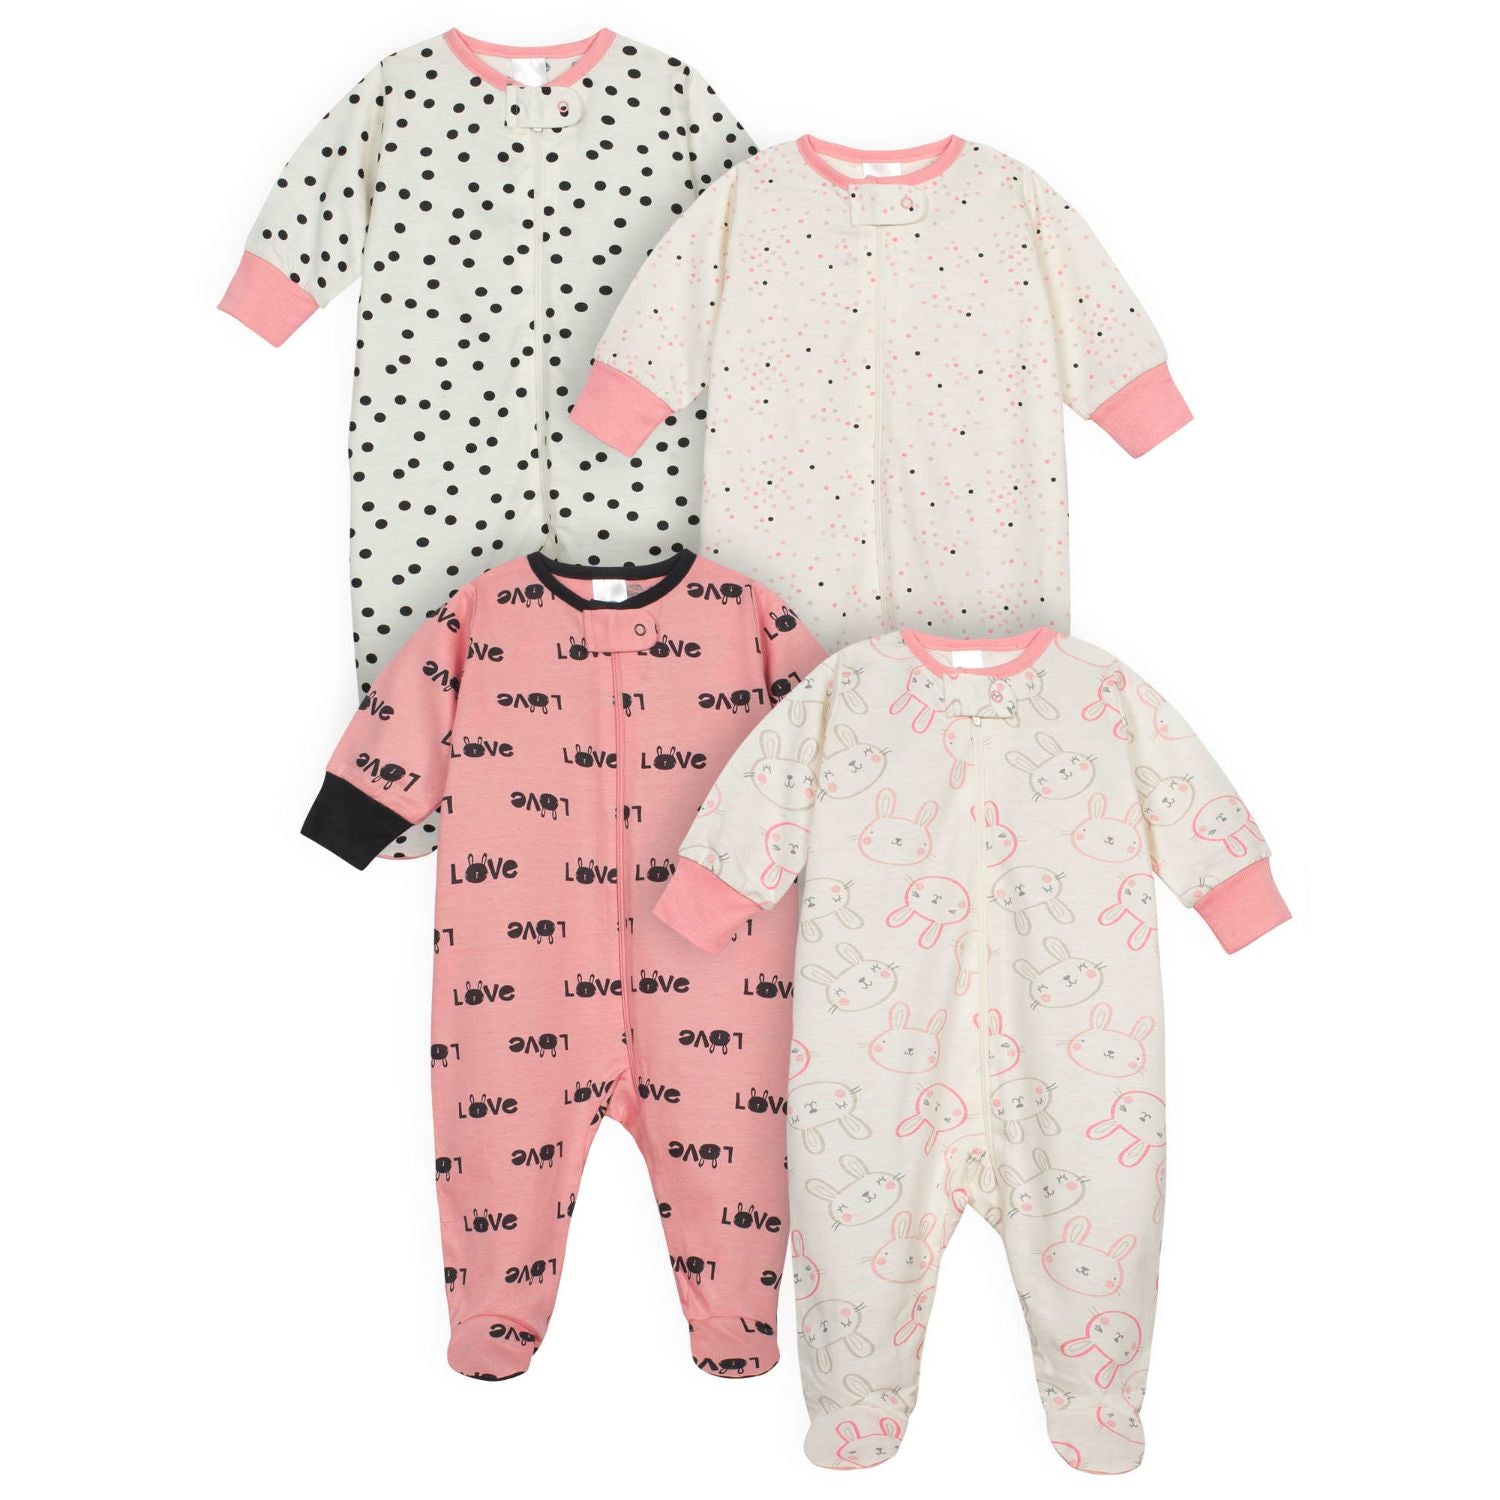 4-Pack Baby Girls Bunny Sleep N' Play-Gerber Childrenswear Wholesale